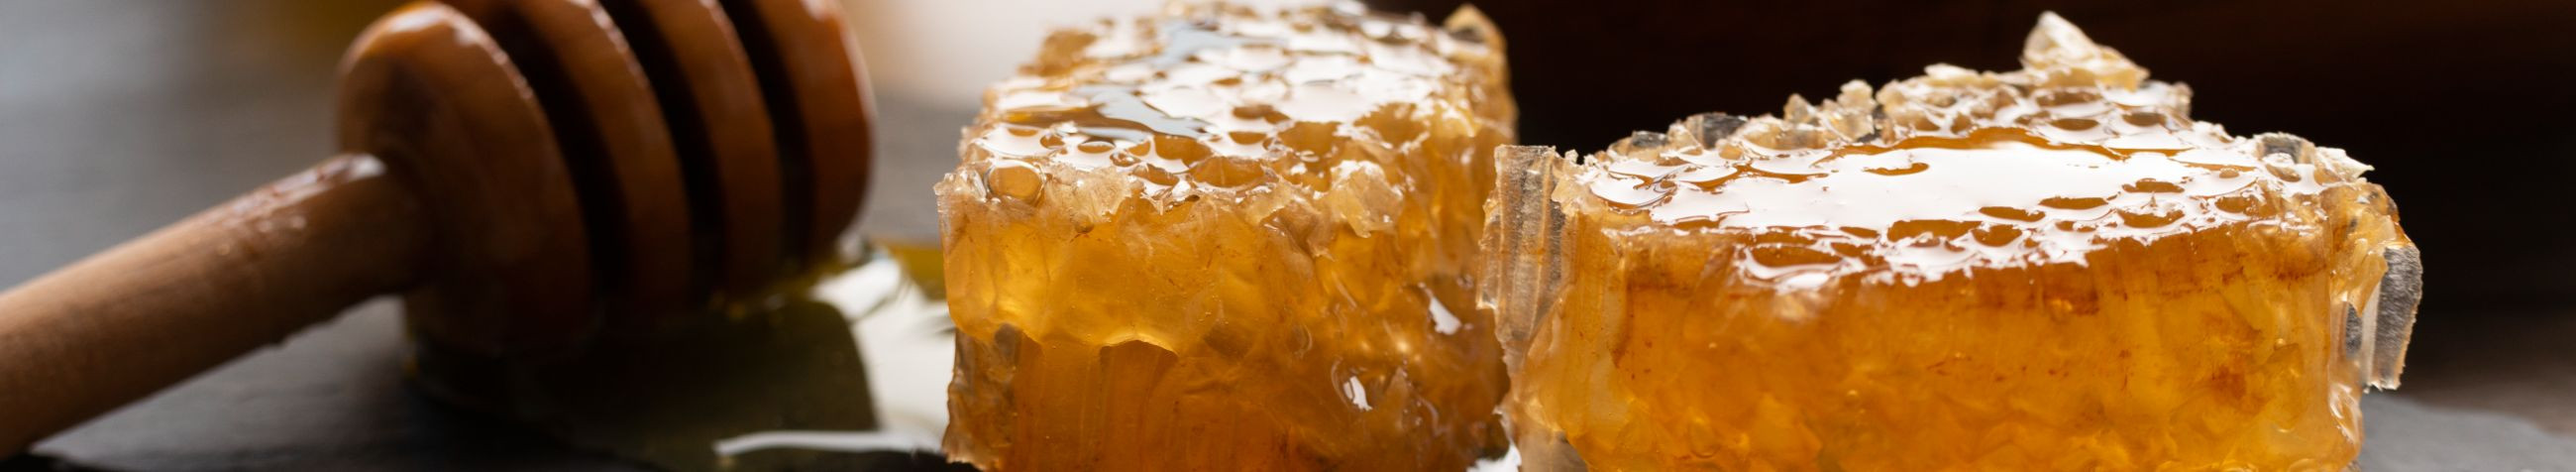 beekeeping, Beekeeping products, honey packaging, natural honey, estonian honey, sweetener, honey in a glass jar, natural sweetener, marketing of honey products, honeypacks